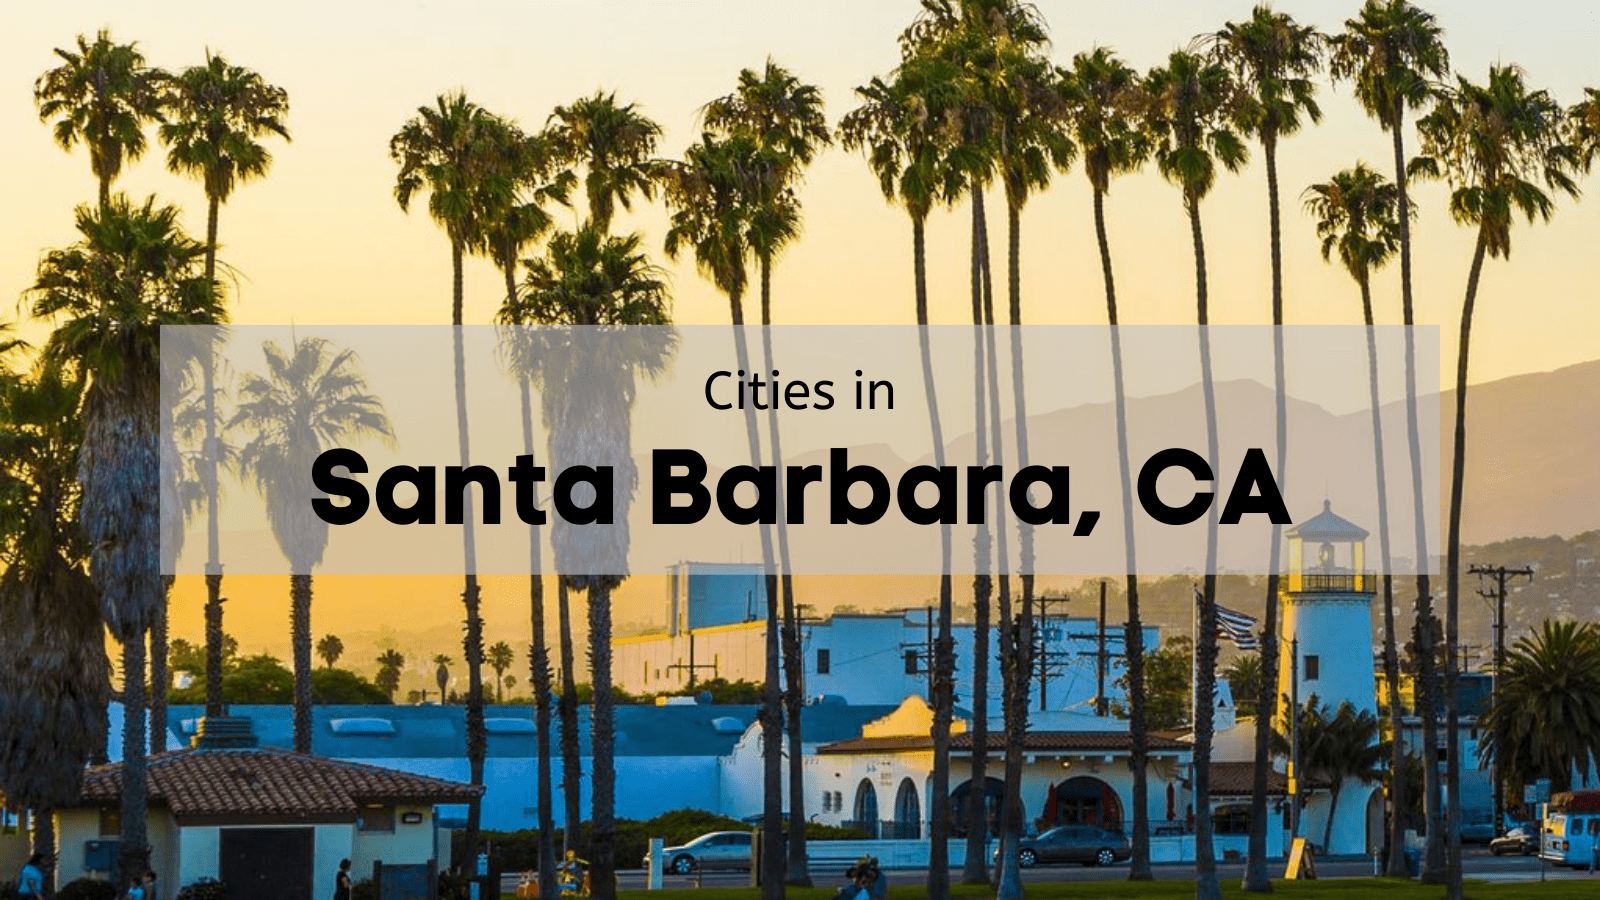 Cities in Santa Barbara